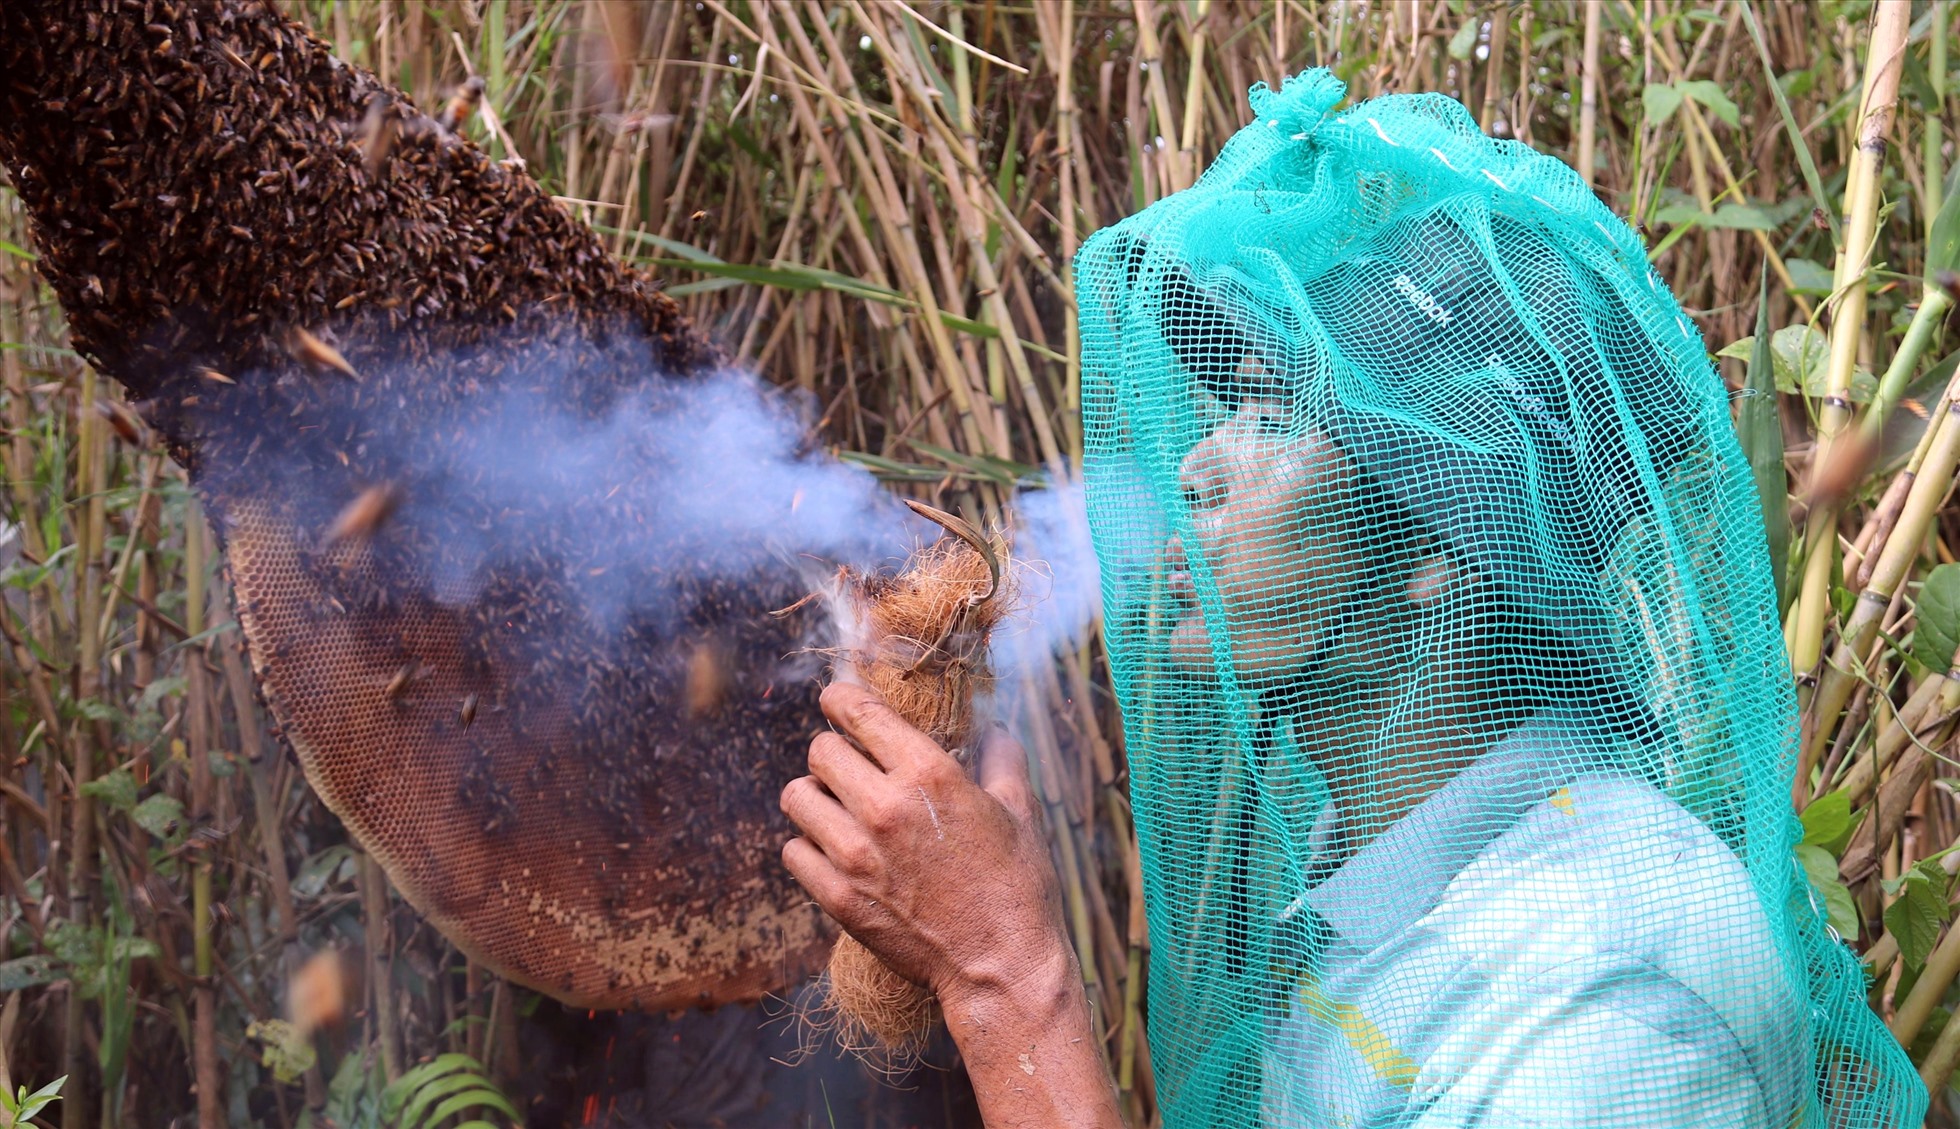 Vào rừng U Minh Hạ theo chân những người ăn ong là trải nghiệm du lịch thích thú đối với nhiều du khách khi đến tỉnh Cà Mau. Ảnh: Nhật Hồ